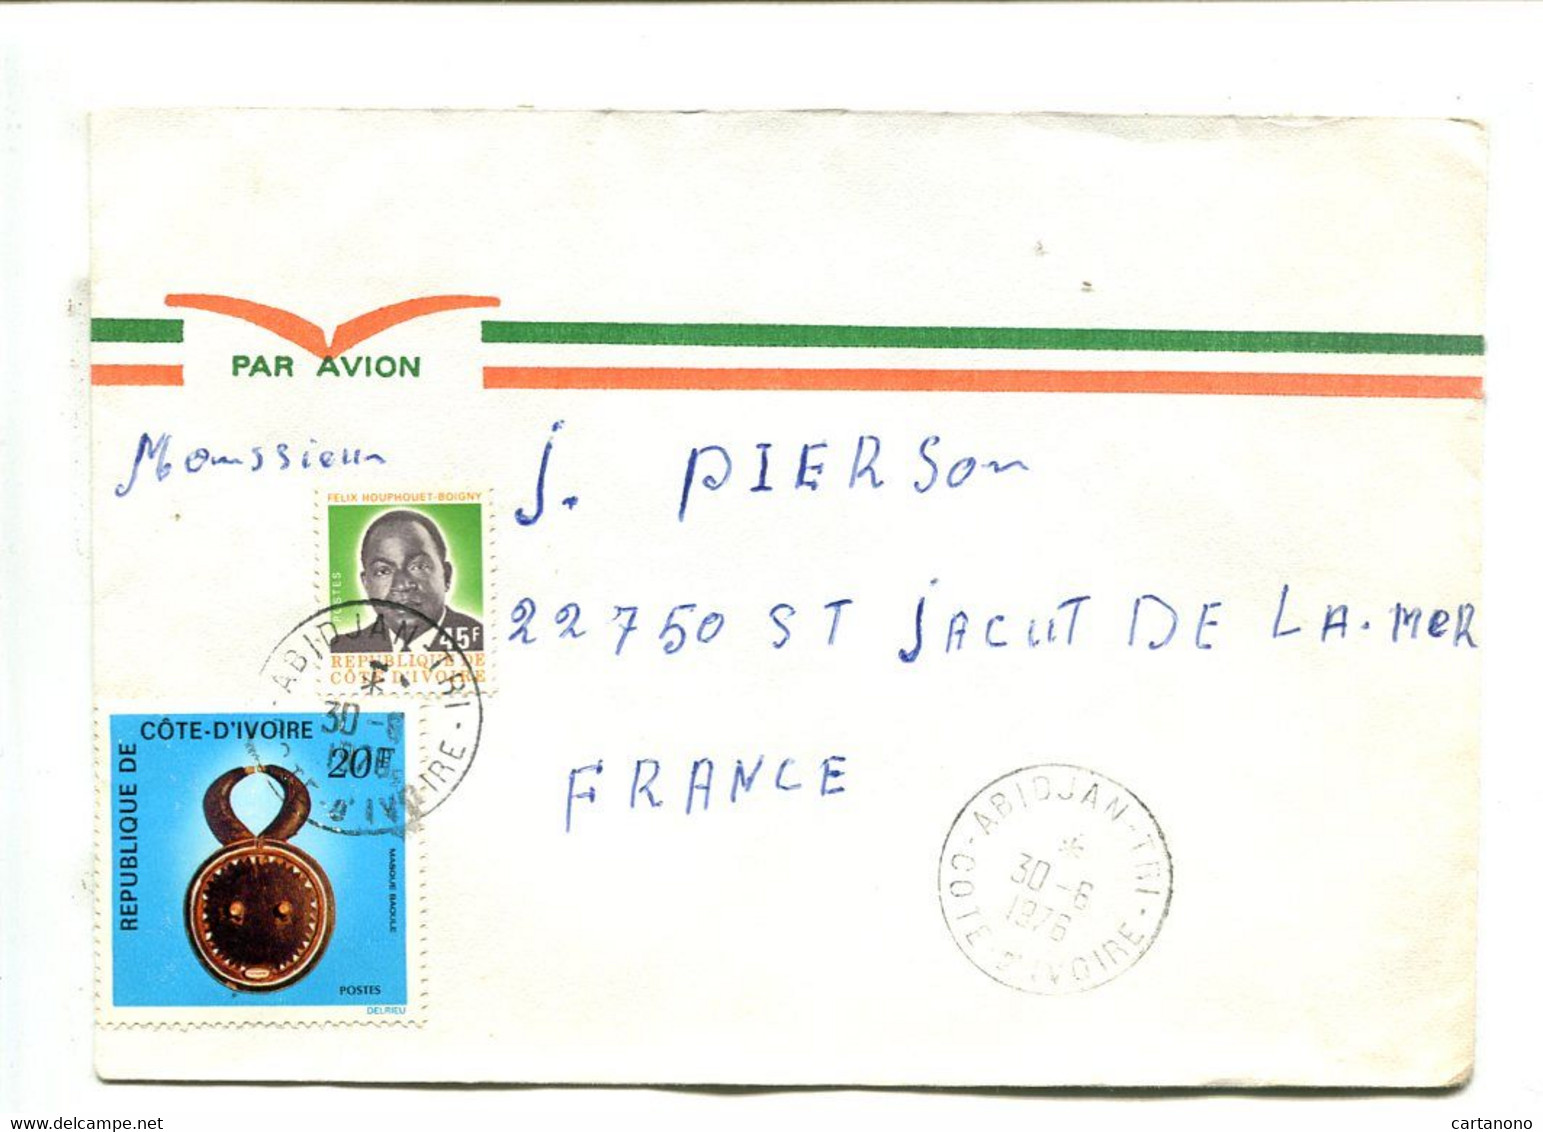 COTE D'IVOIRE Abidjan Tri 1976 - Affranchissement Sur Lettre Par Avion  - - Ivory Coast (1960-...)